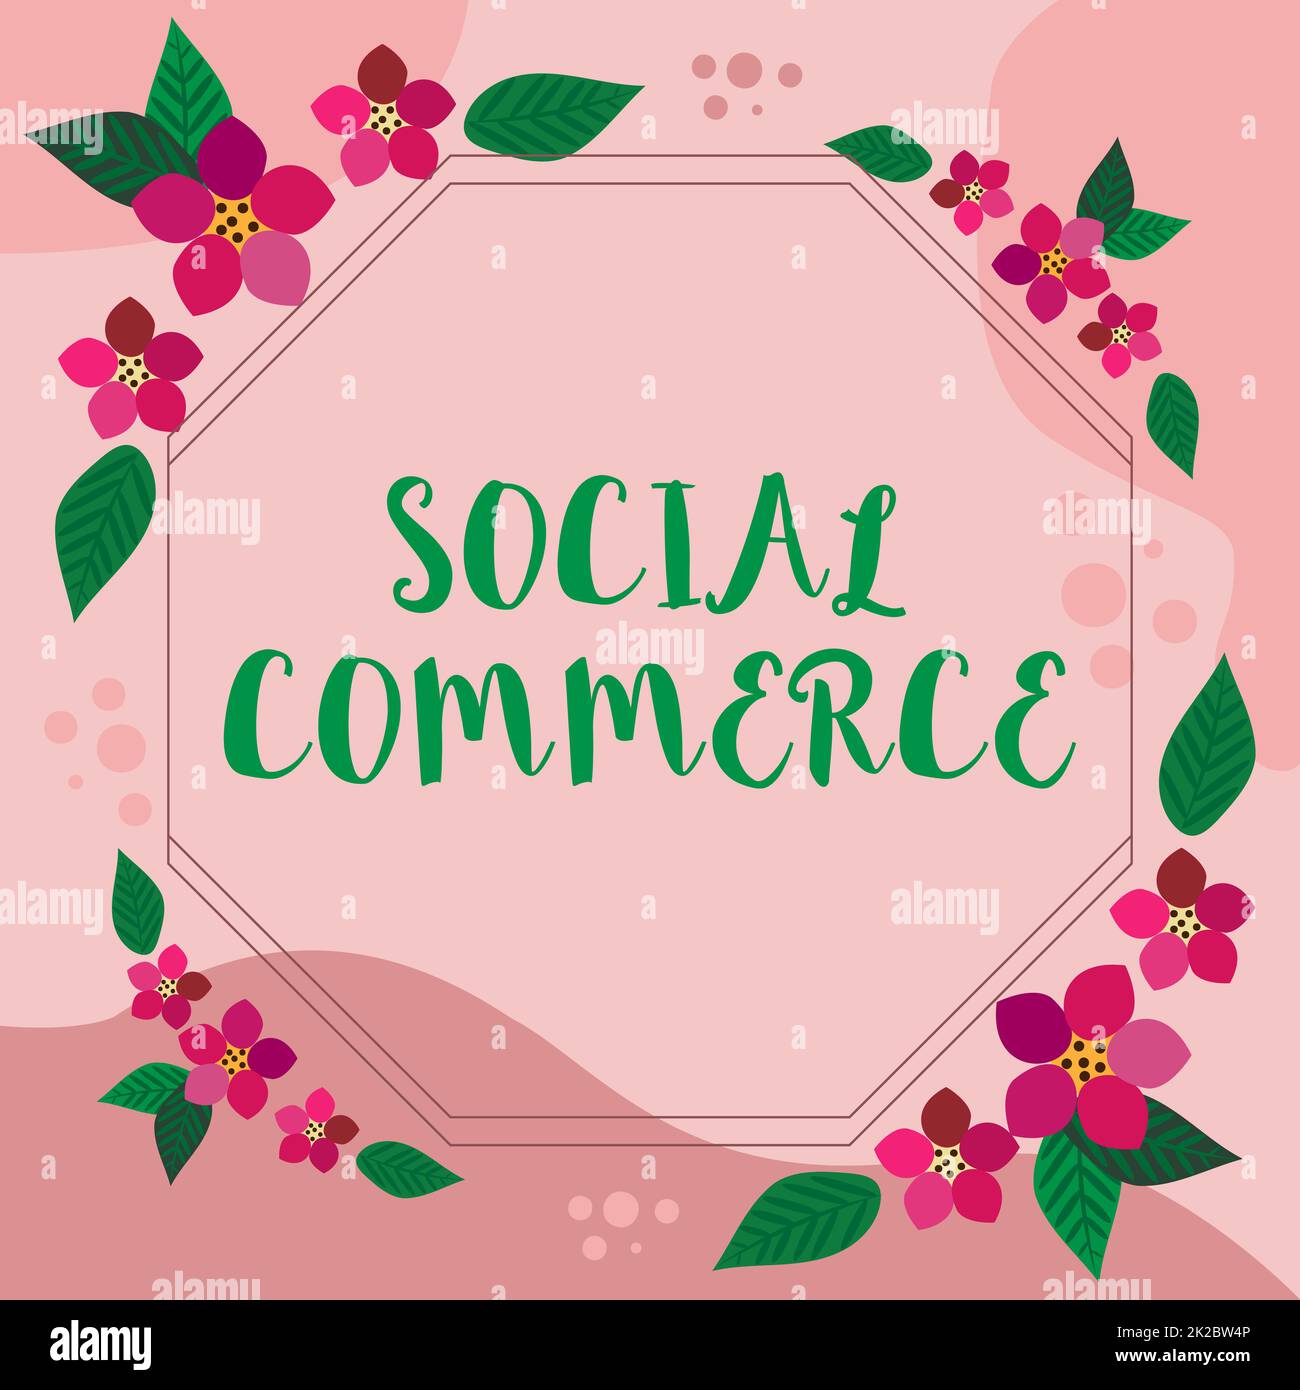 Textüberschrift für Social Commerce. Business Concept nutzt soziale Netzwerke beim Kauf von Produkten Rahmen dekoriert mit farbenfrohen Blumen und Blattwerk harmonisch angeordnet. Stockfoto